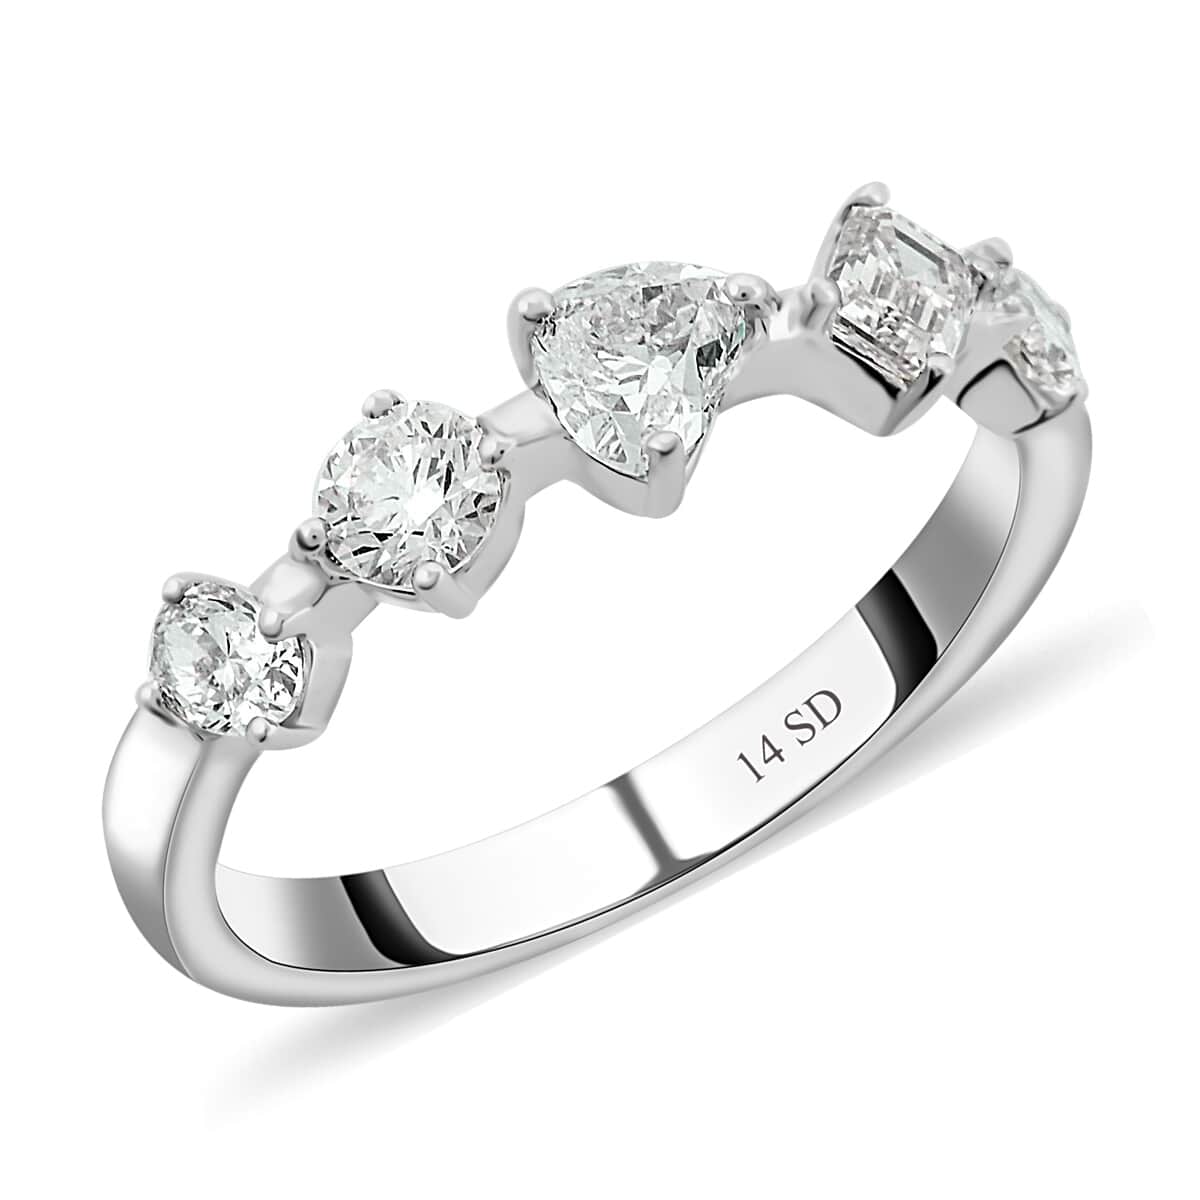 Modani 18K White Gold Diamond E-F VS2 Ring (Size 7.0) 3 Grams ctw (Del. in 10-12 Days) image number 0